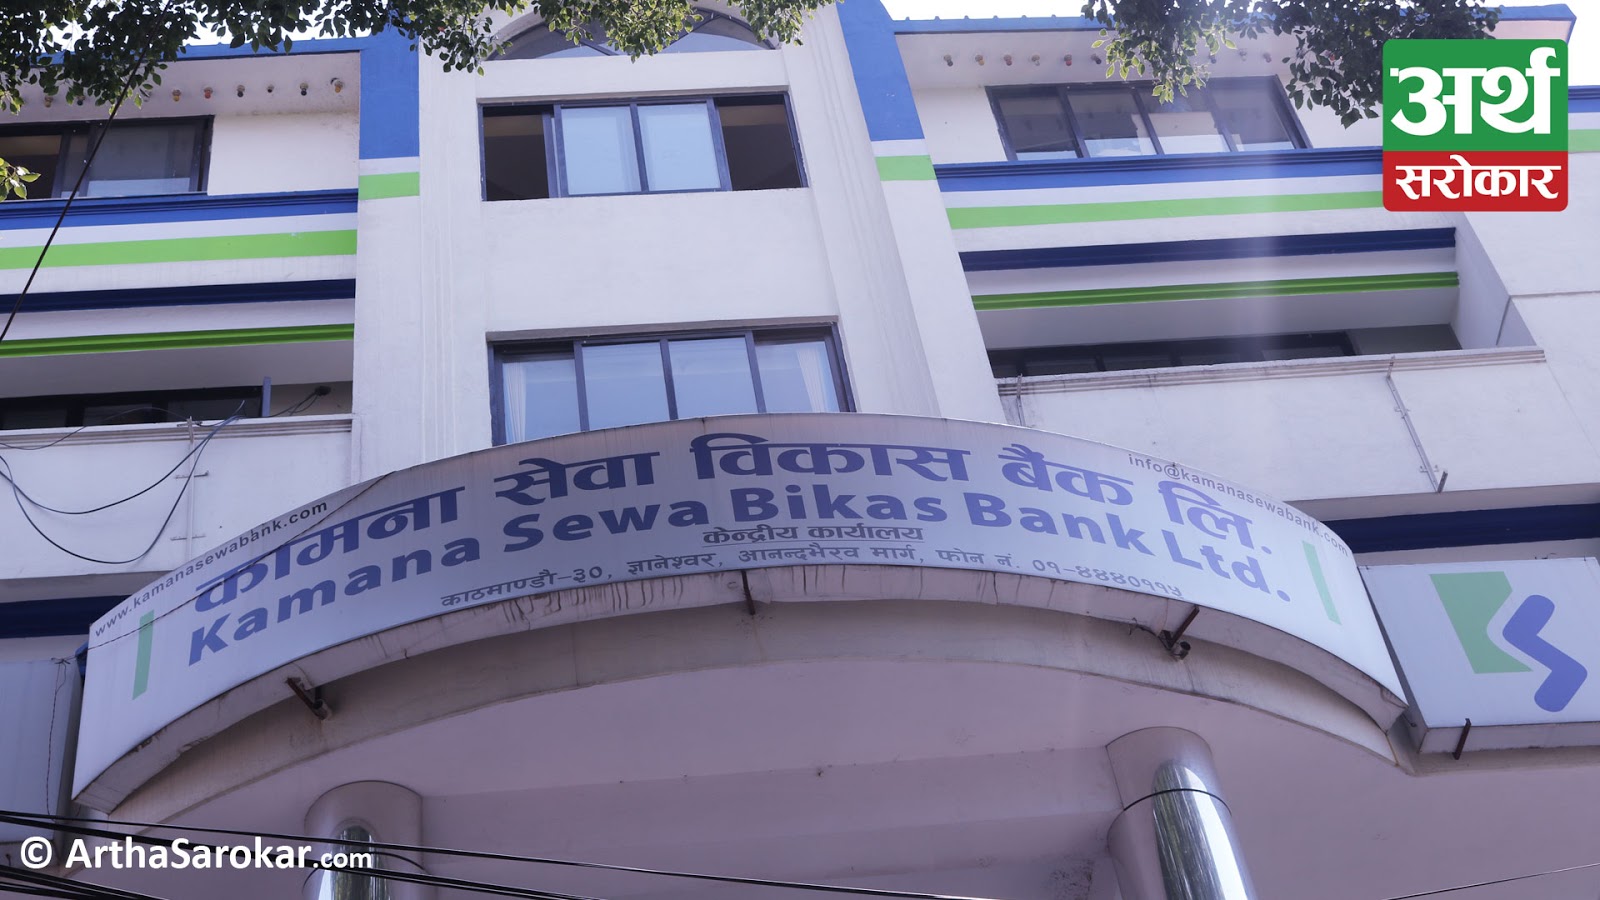 Kamana Sewa Bikas Bank will not distribute any dividends this year